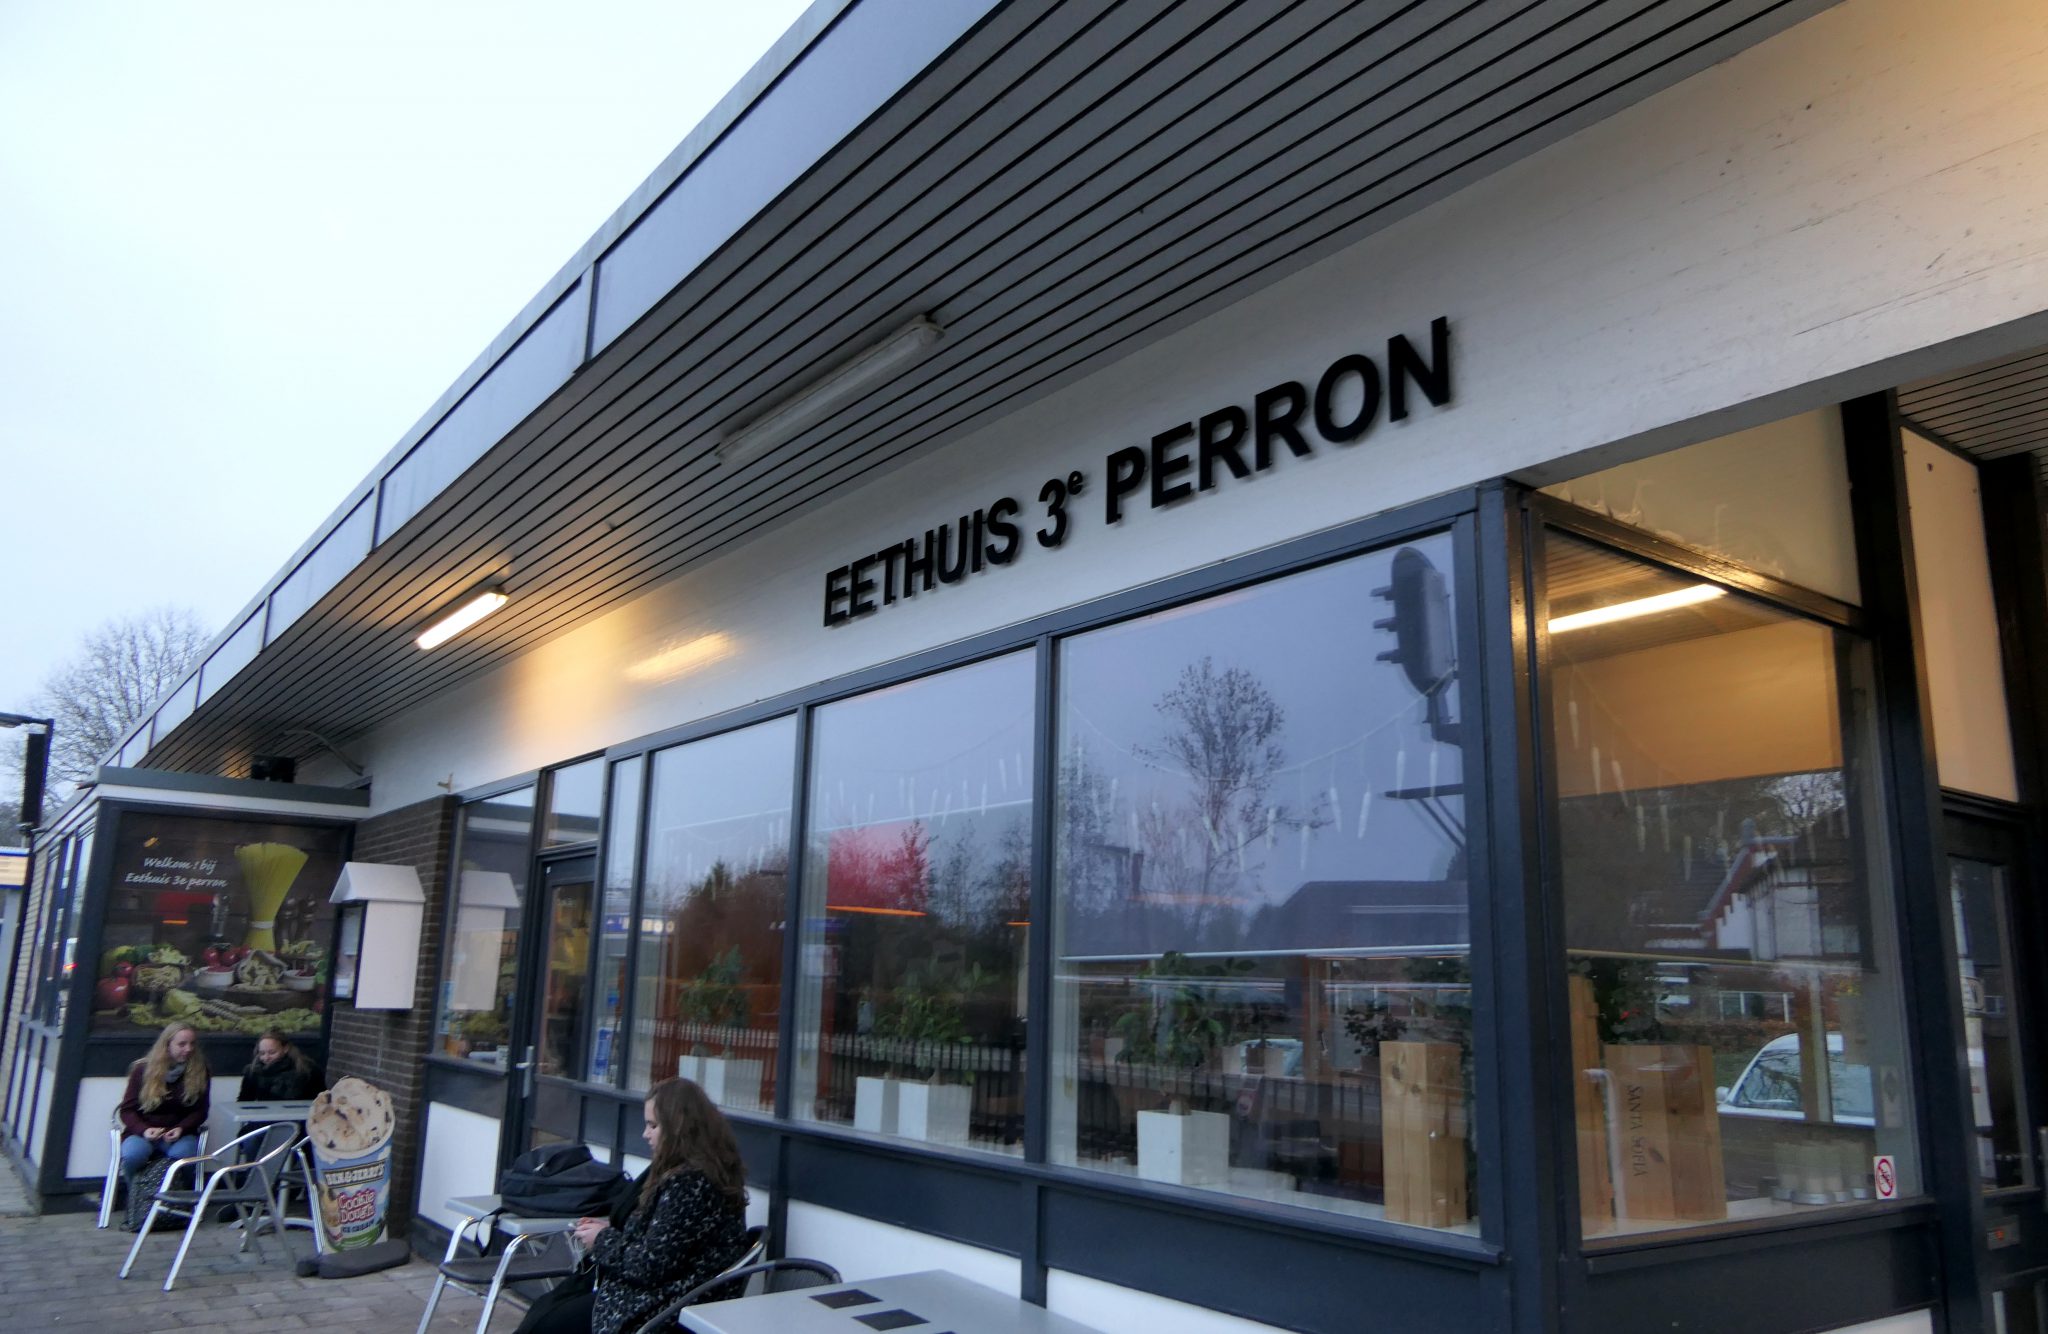 Nu gaat 'Eethuis 3e perron' pas om 17.00 uur open, na de verbouwing vanaf 9.00 uur.